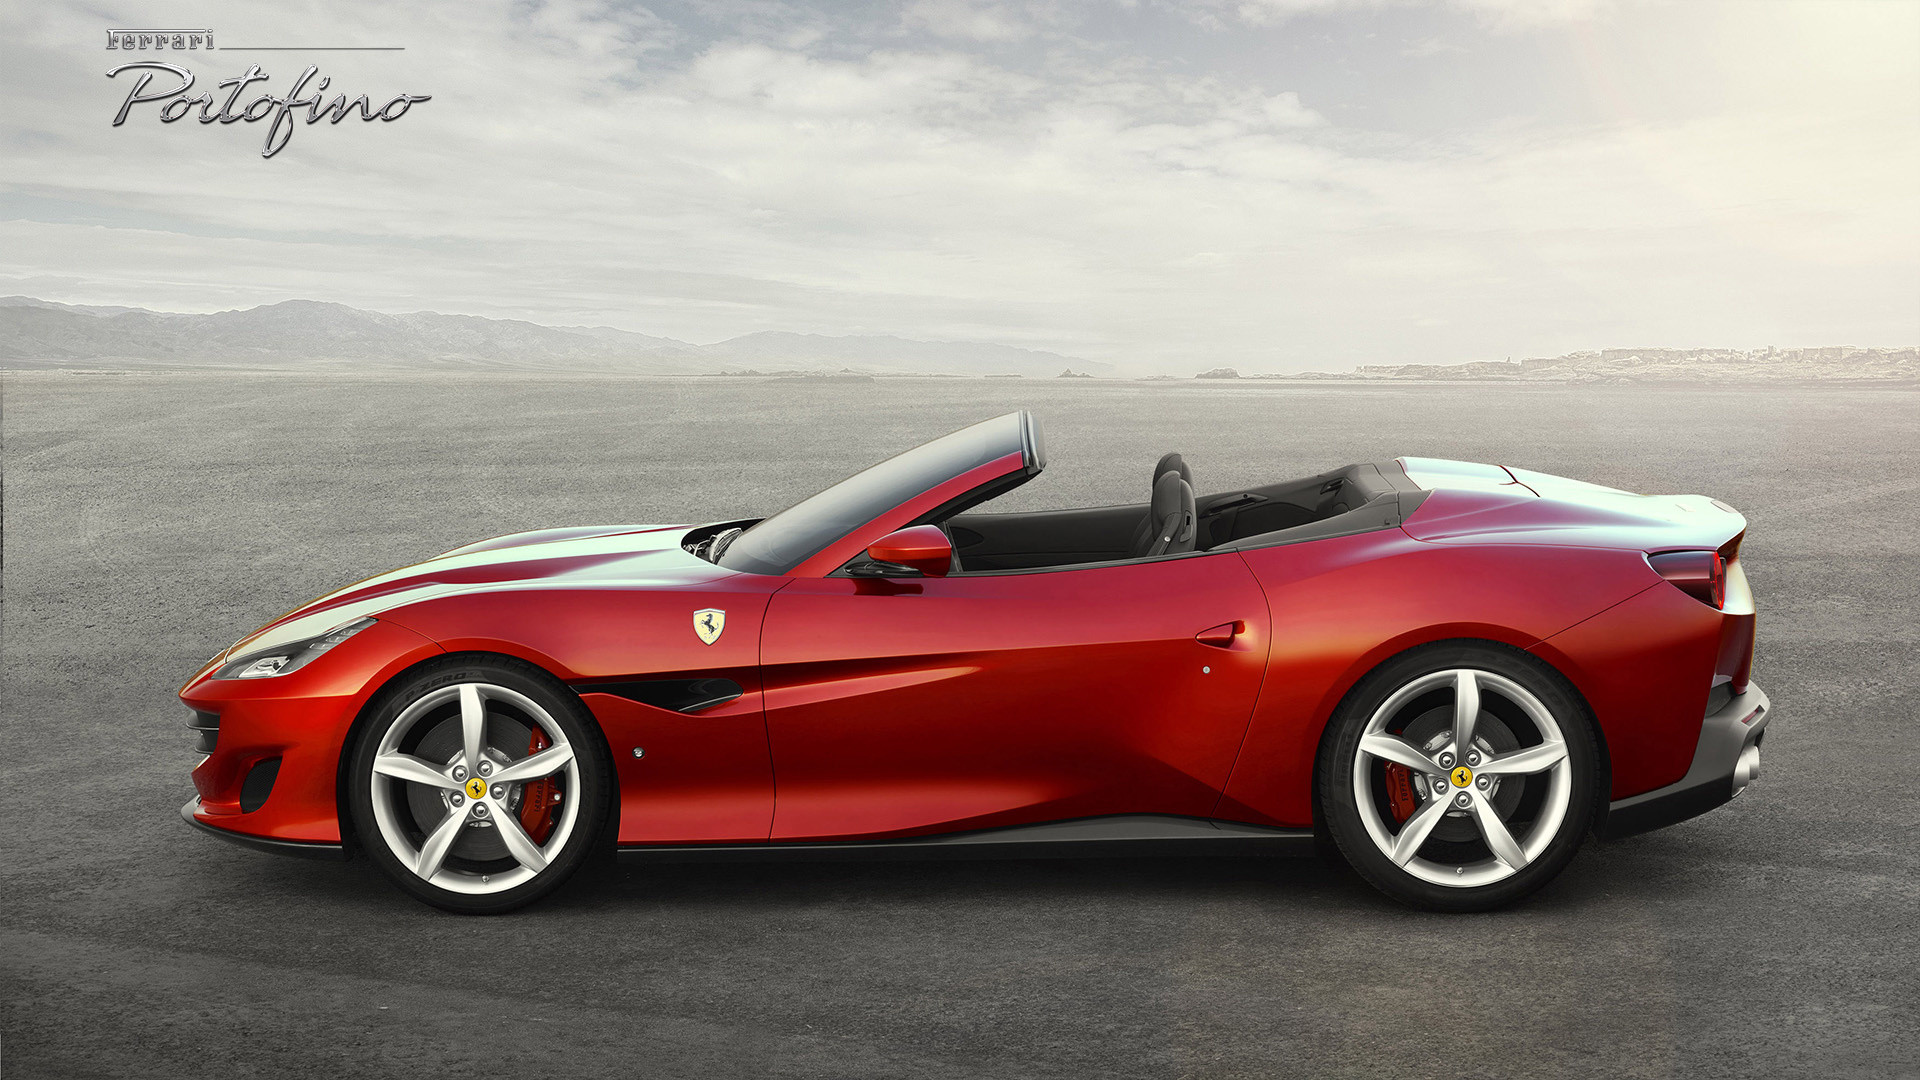 Ferrari Portofino technical specifications, carspec